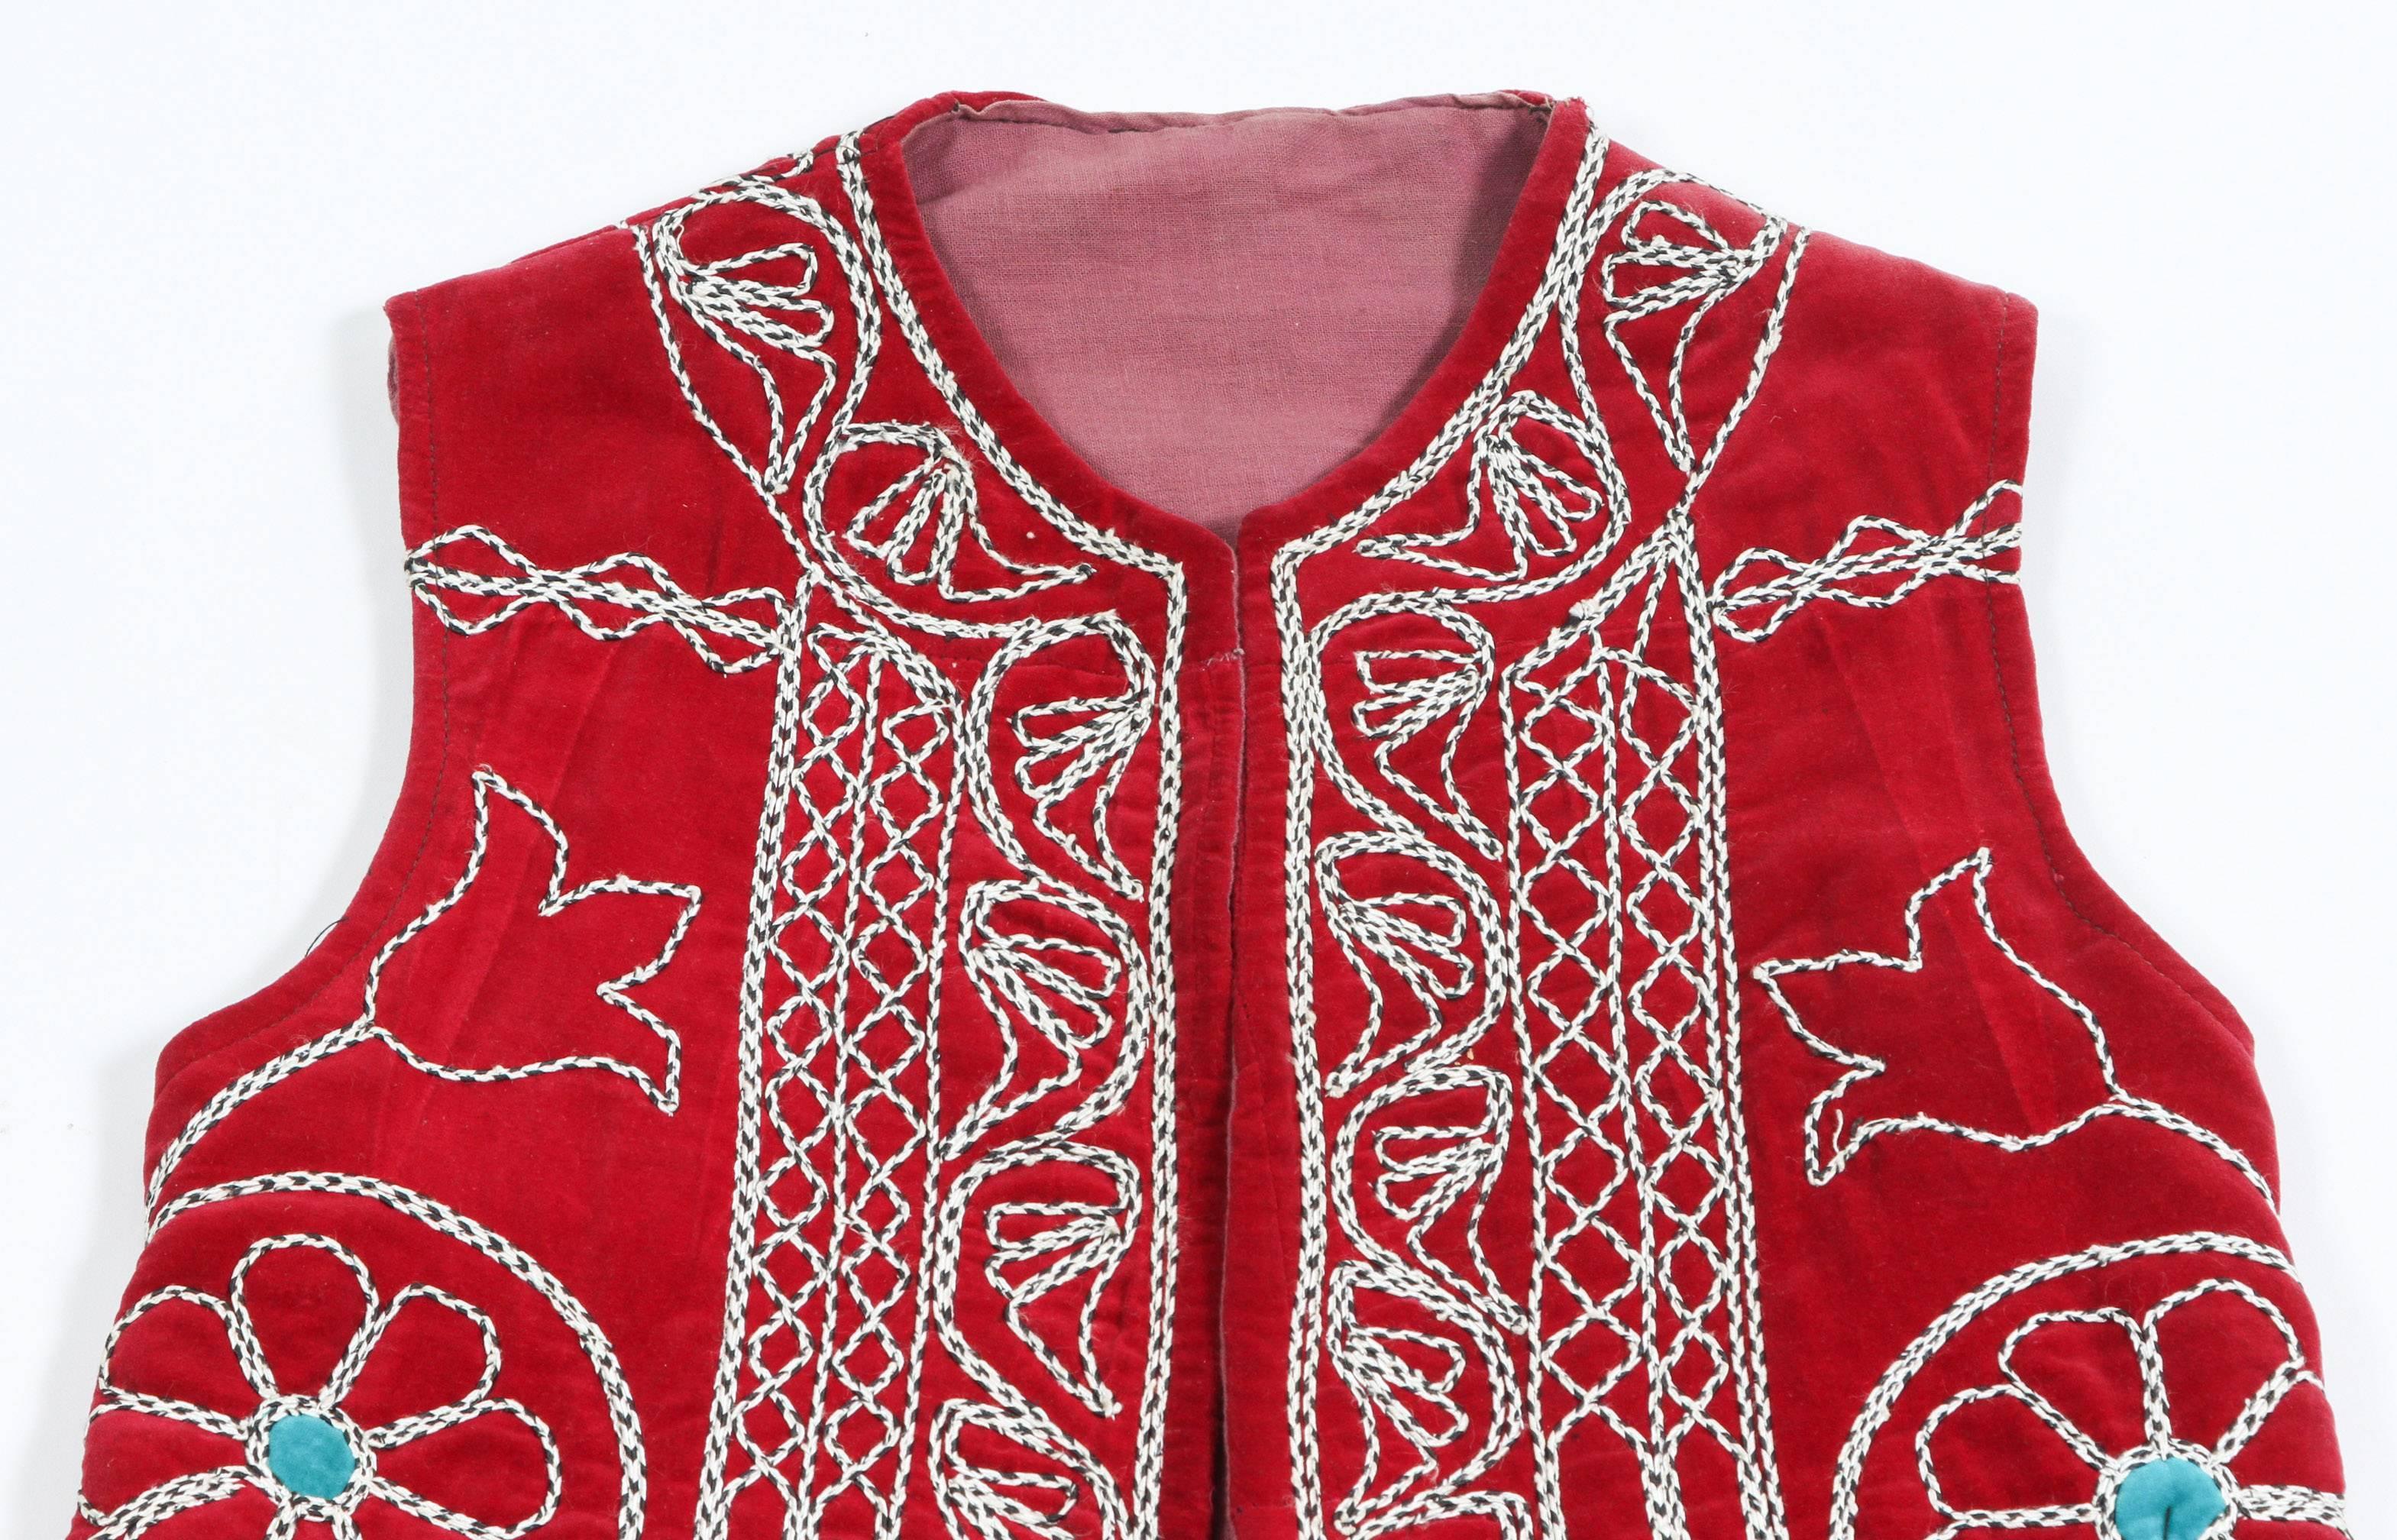 Elegante türkische lange Weste im Vintage-Stil mit bunten geometrischen Mustern auf rotem Grund.
Teil der türkischen zeremoniellen Volkstracht.
Die Motive auf der offenen Jacke sind mit weißen Fäden, Blumen und kunstvollen geometrischen Mustern